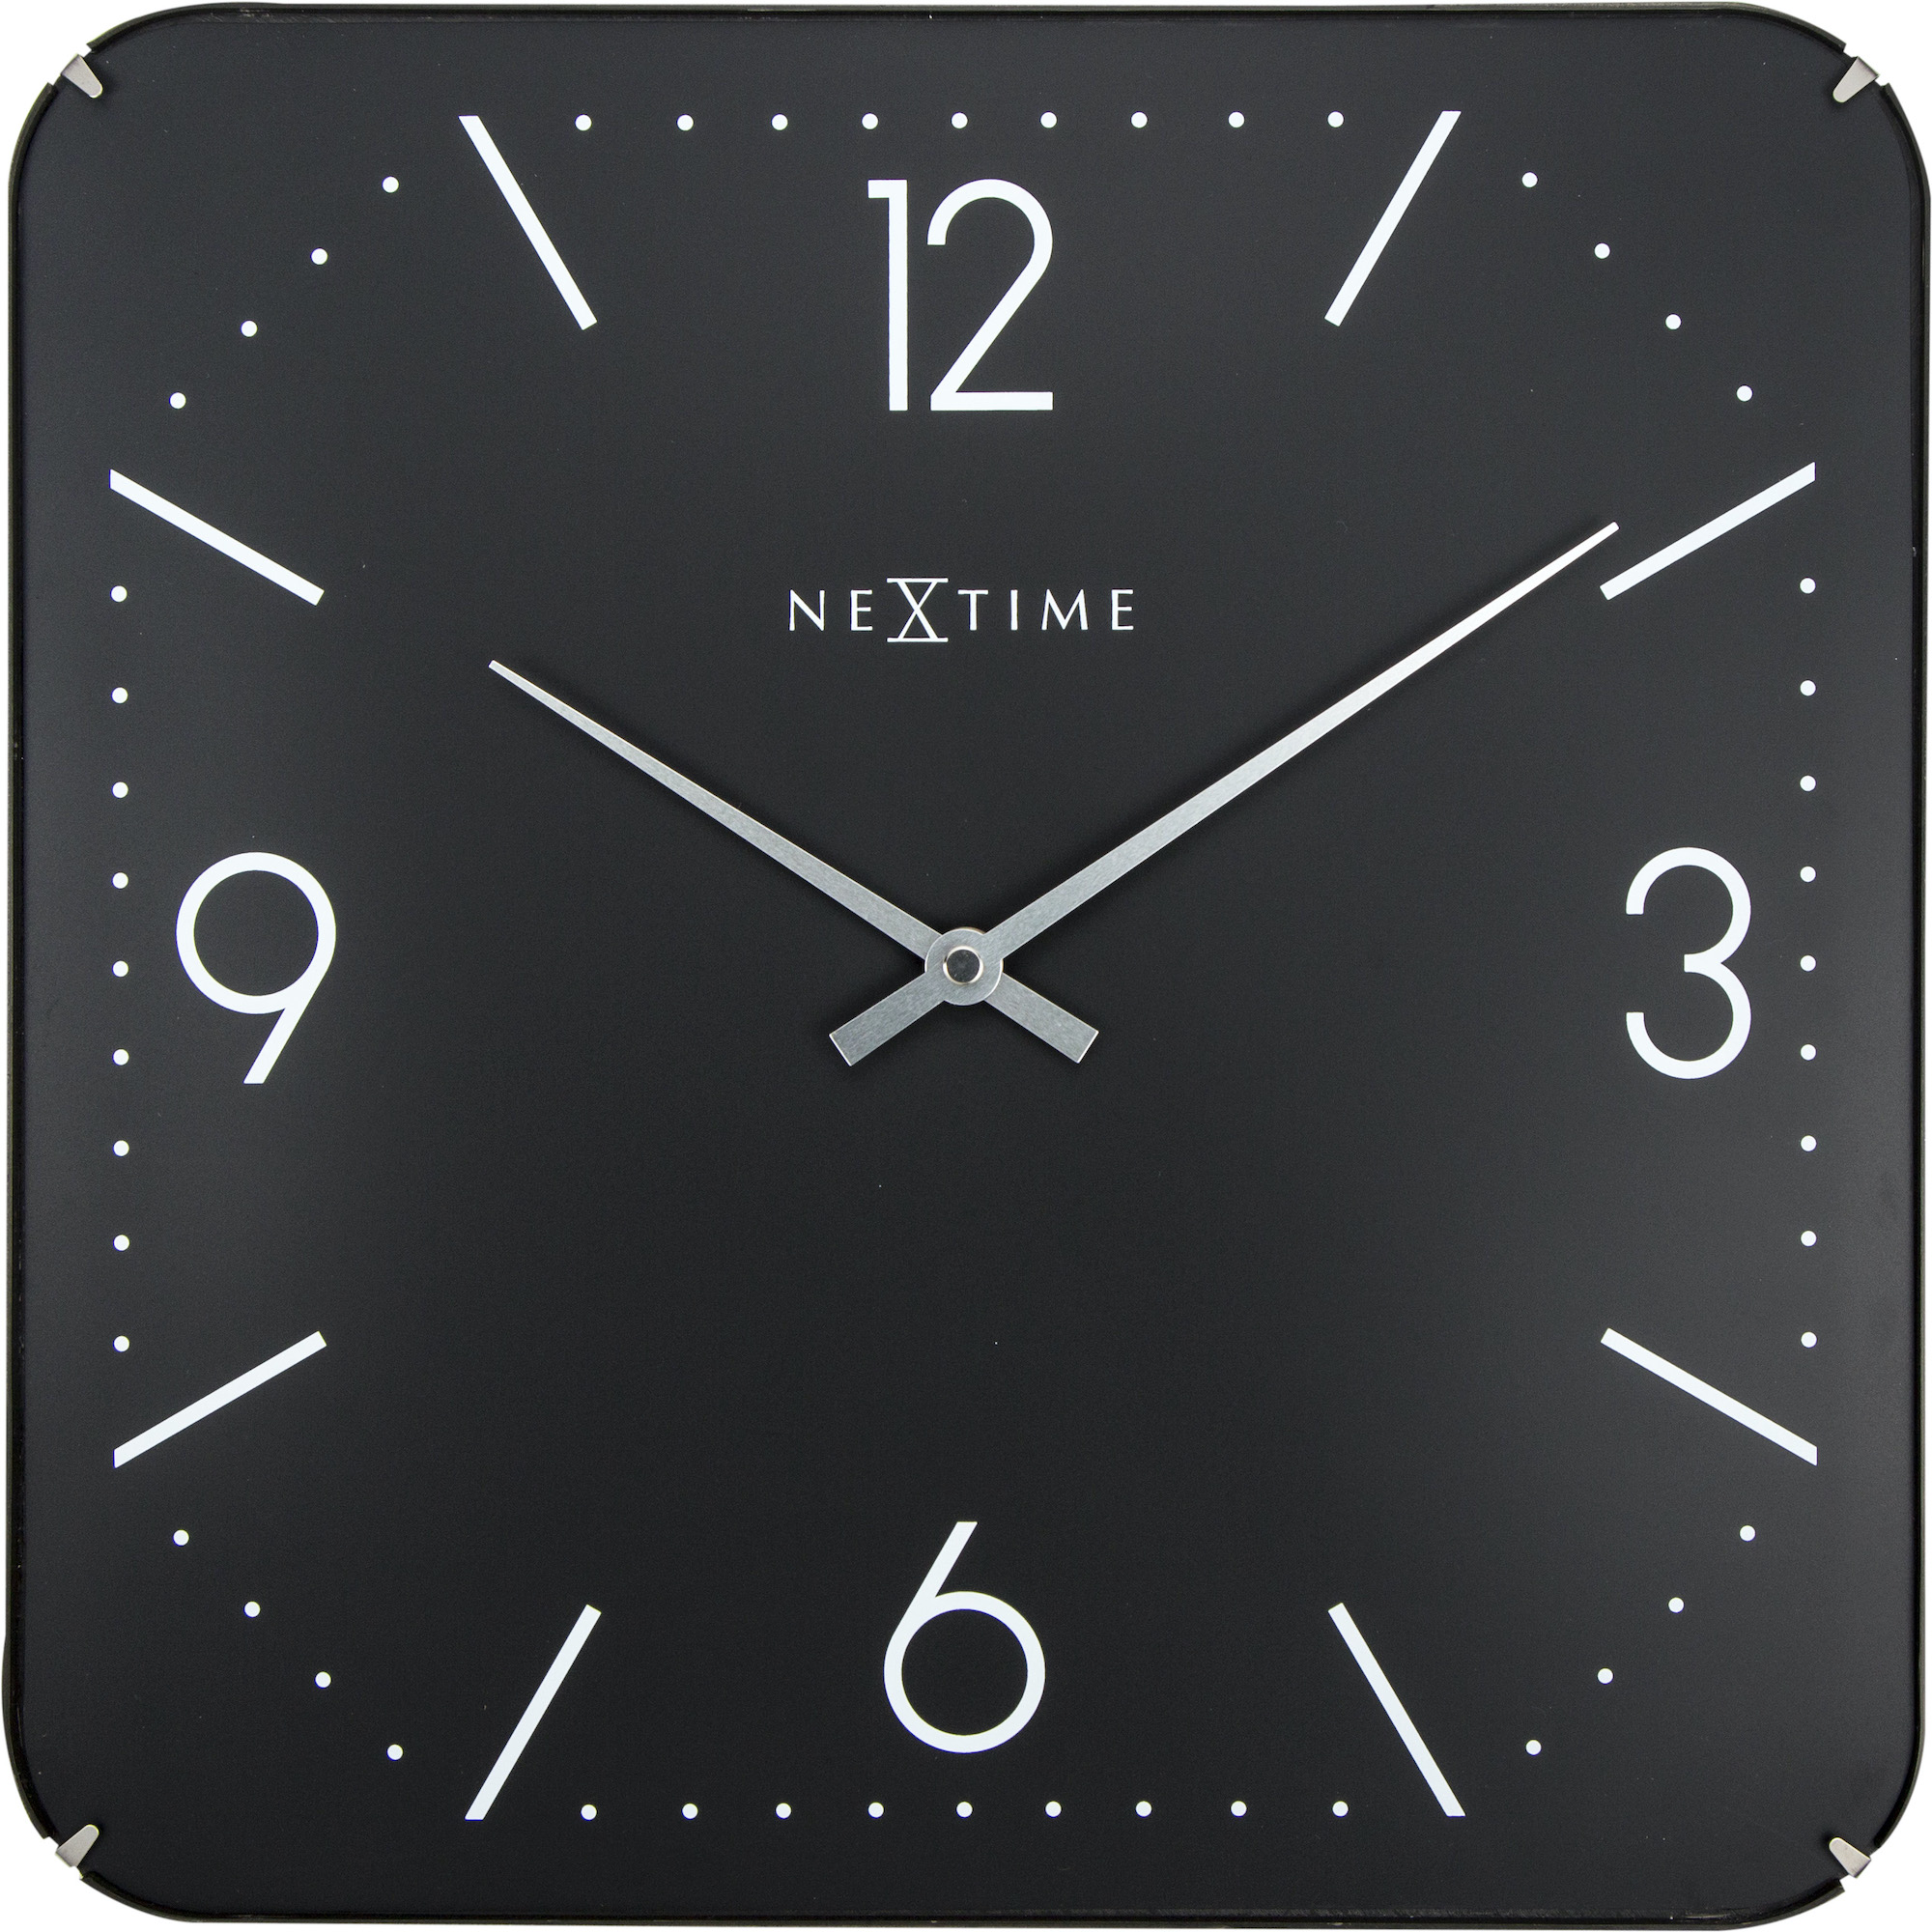 Часы 35 см. Часы Nextime настенные. Настенные часы time Square Black. Часы Basic 2. Nextime музыкант.